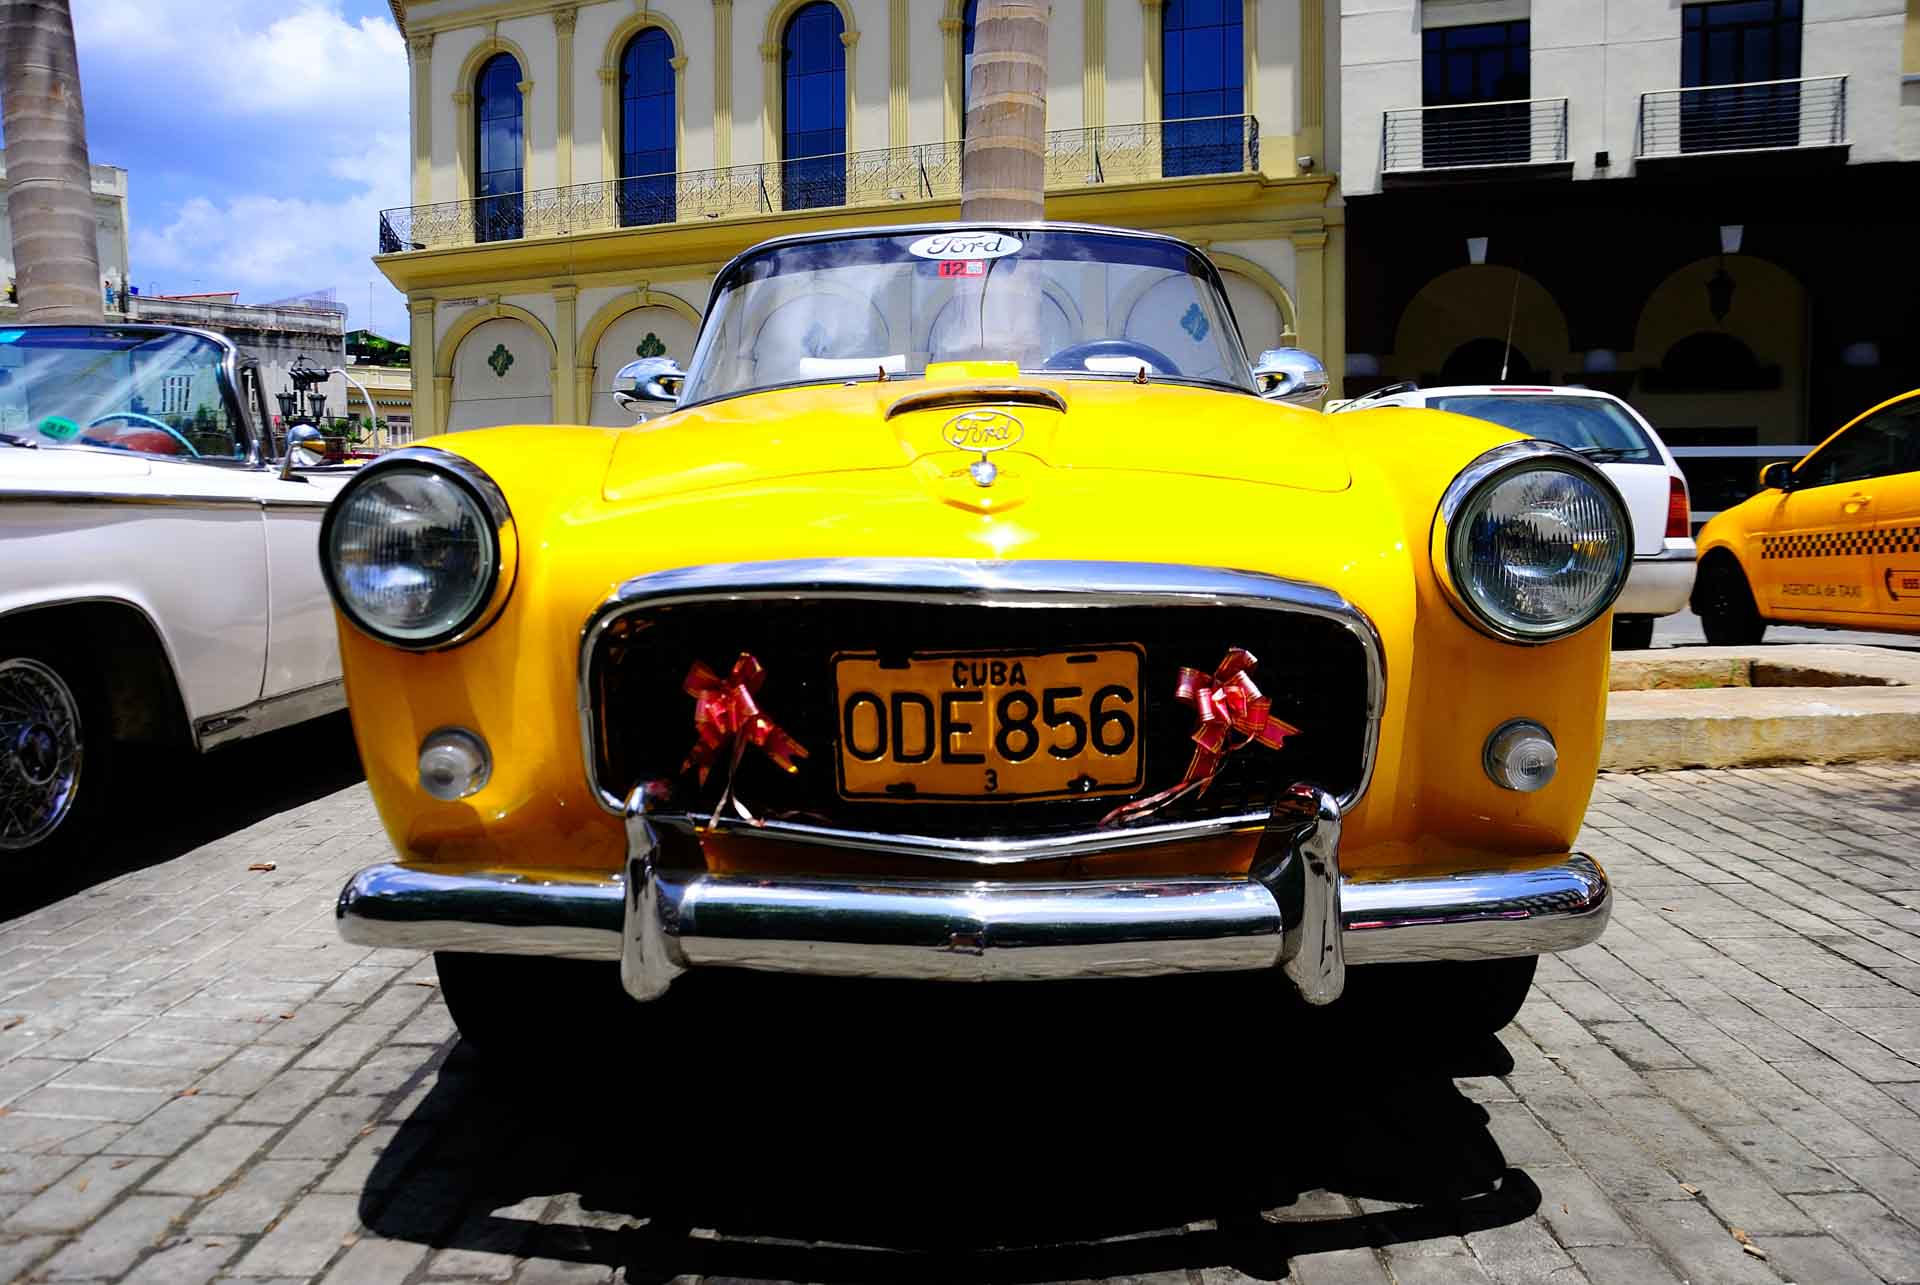 Havana Cuba Vintage Car 4, havana, cuba, pescart, photo blog, travel blog, blog, photo travel blog, enrico pescantini, pescantini